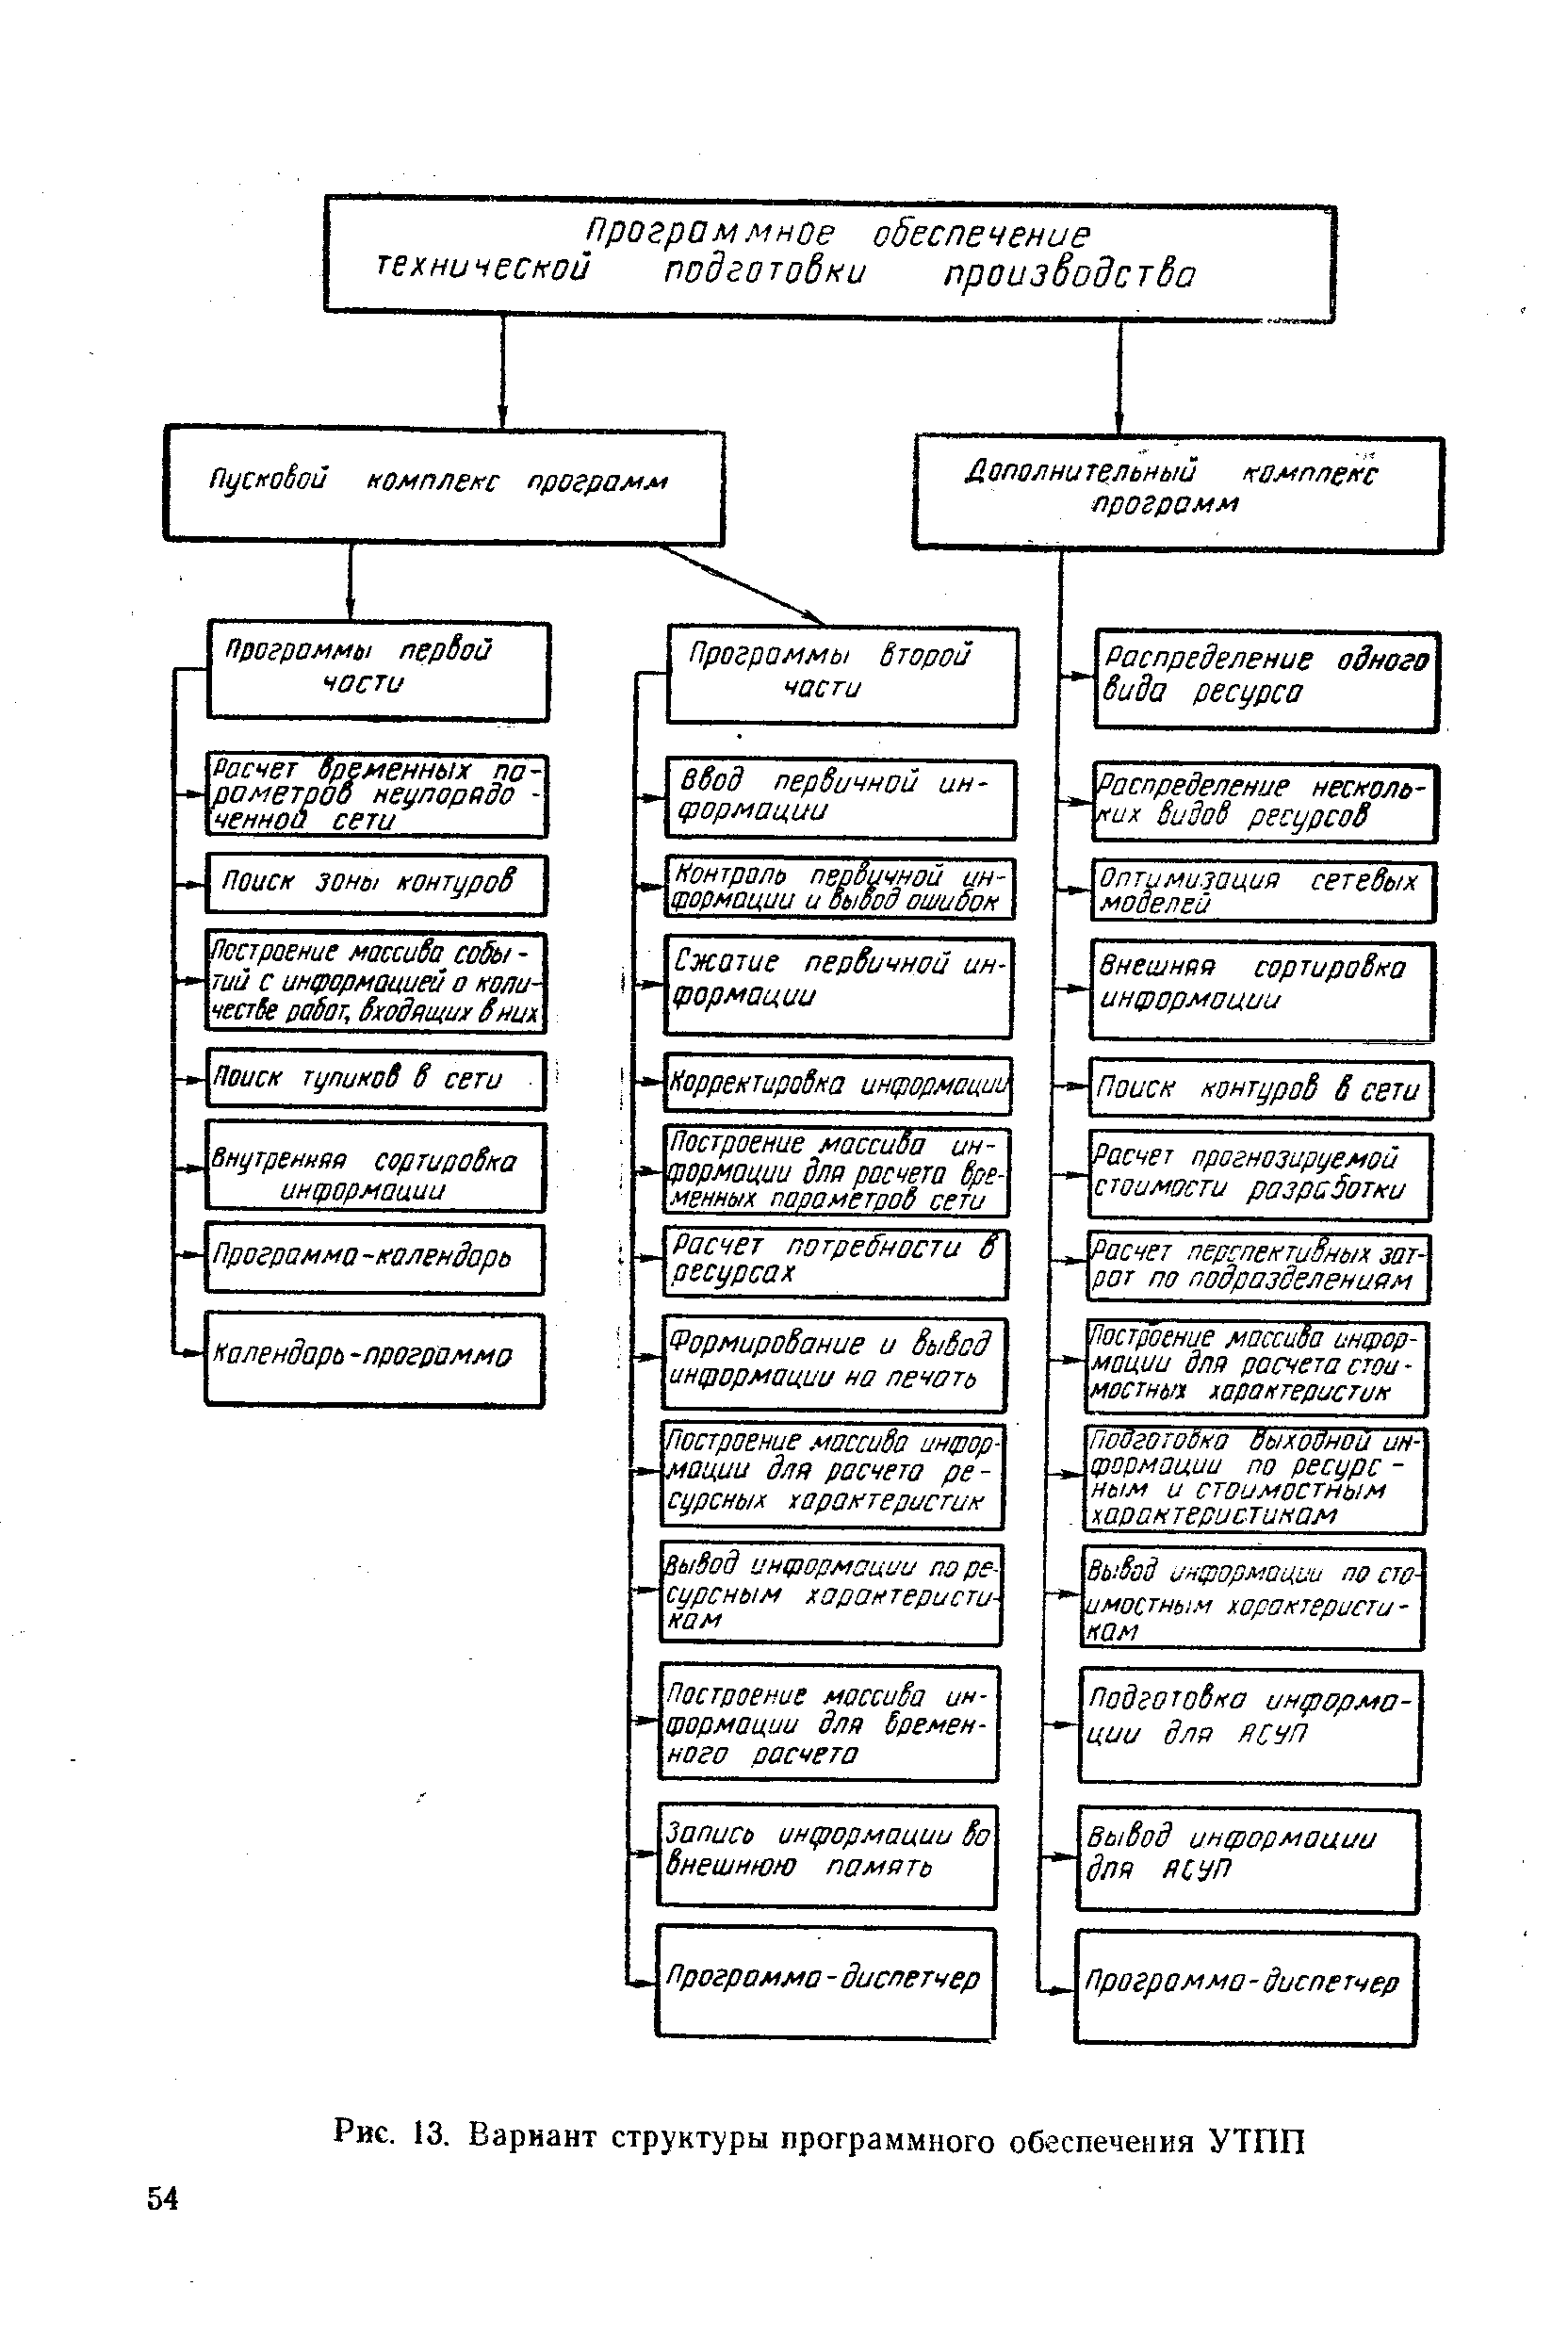 Рис. 13. Вариант структуры программного обеспечения УТПП
